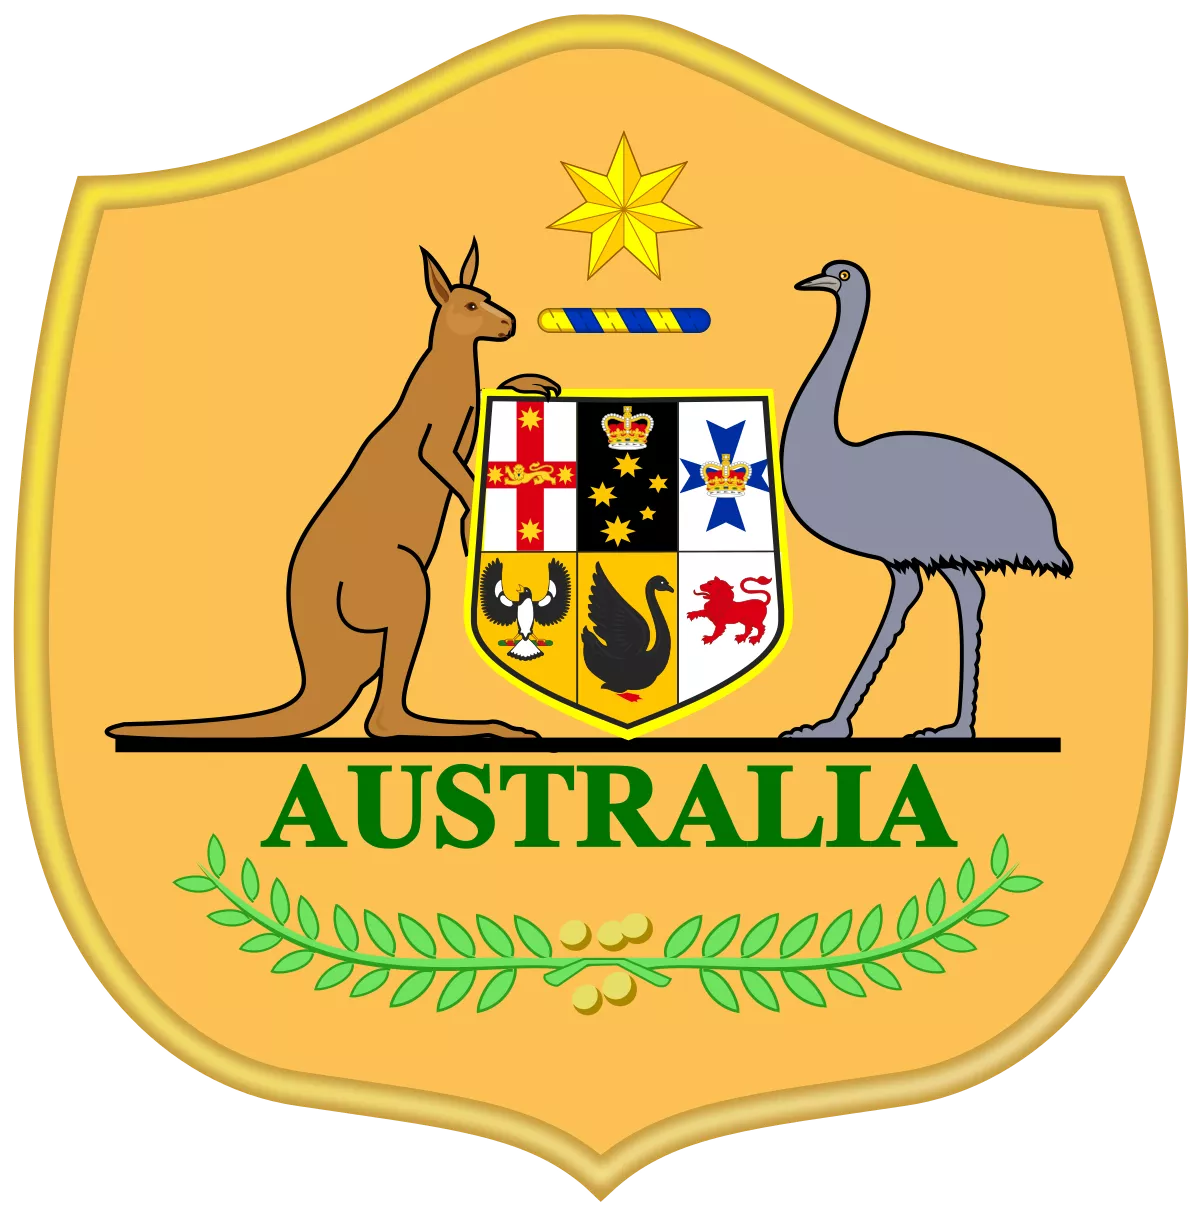 Australia - bestfootballkits